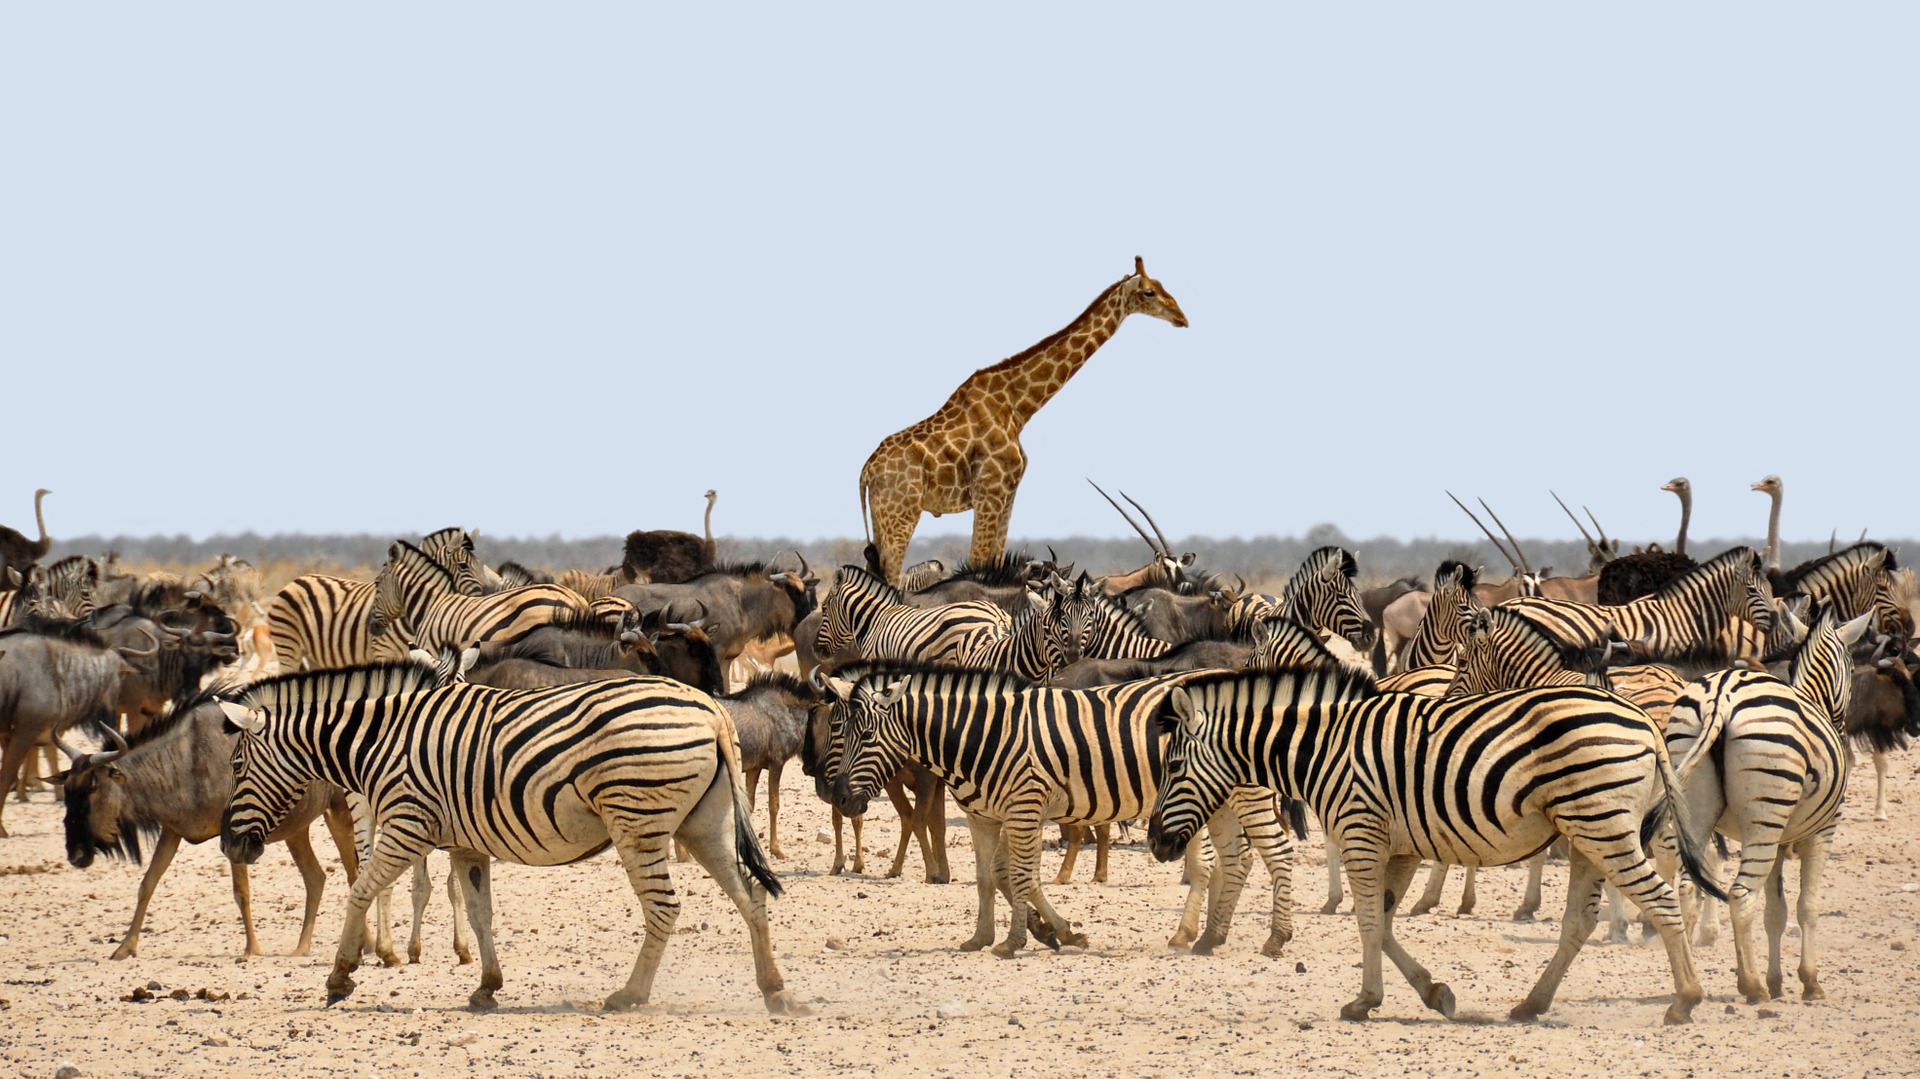 Wandergemeinschaft der Zebras und Giraffen, Antilopen und Strausse in Afrika.